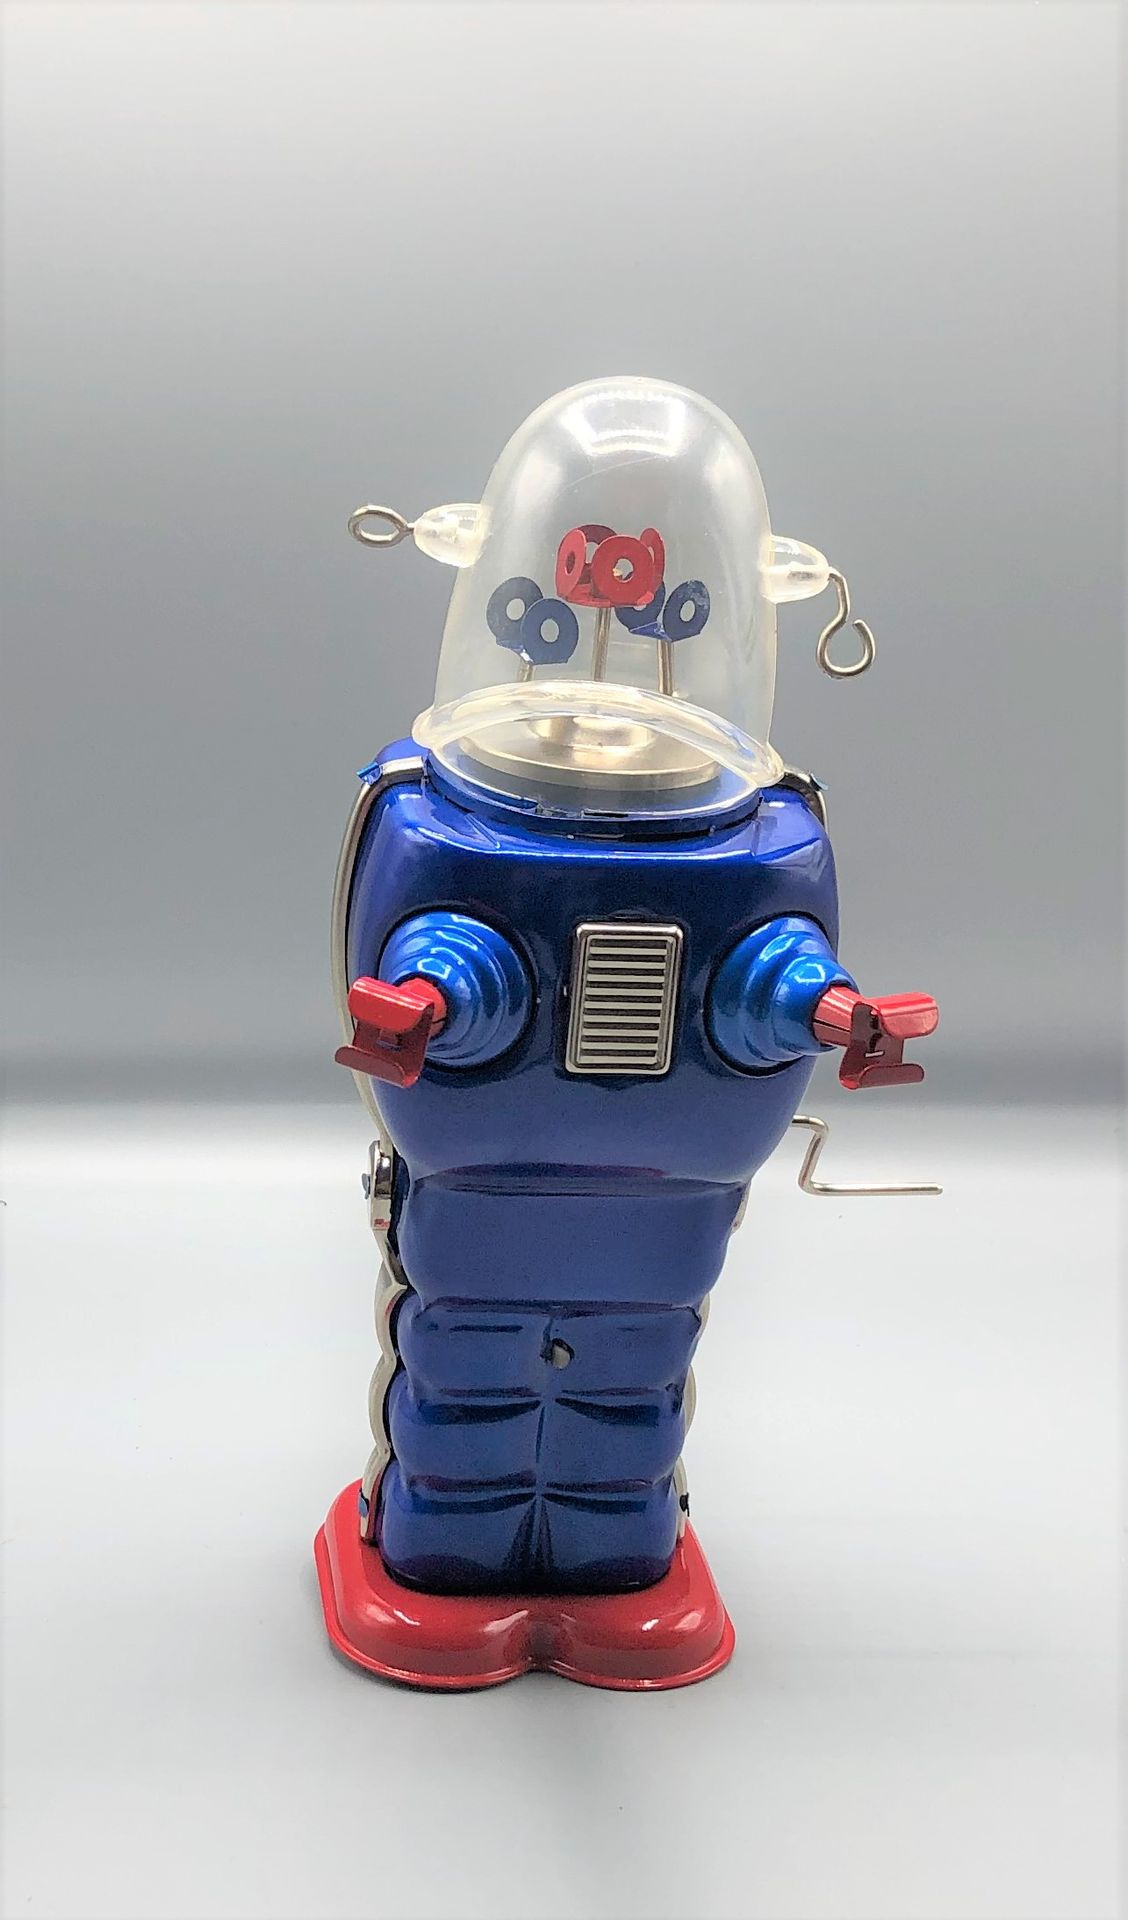 Null 哈哈玩具

太空骑兵蓝色机械

1970 - 1980

使用状况

更多信息请联系该研究。